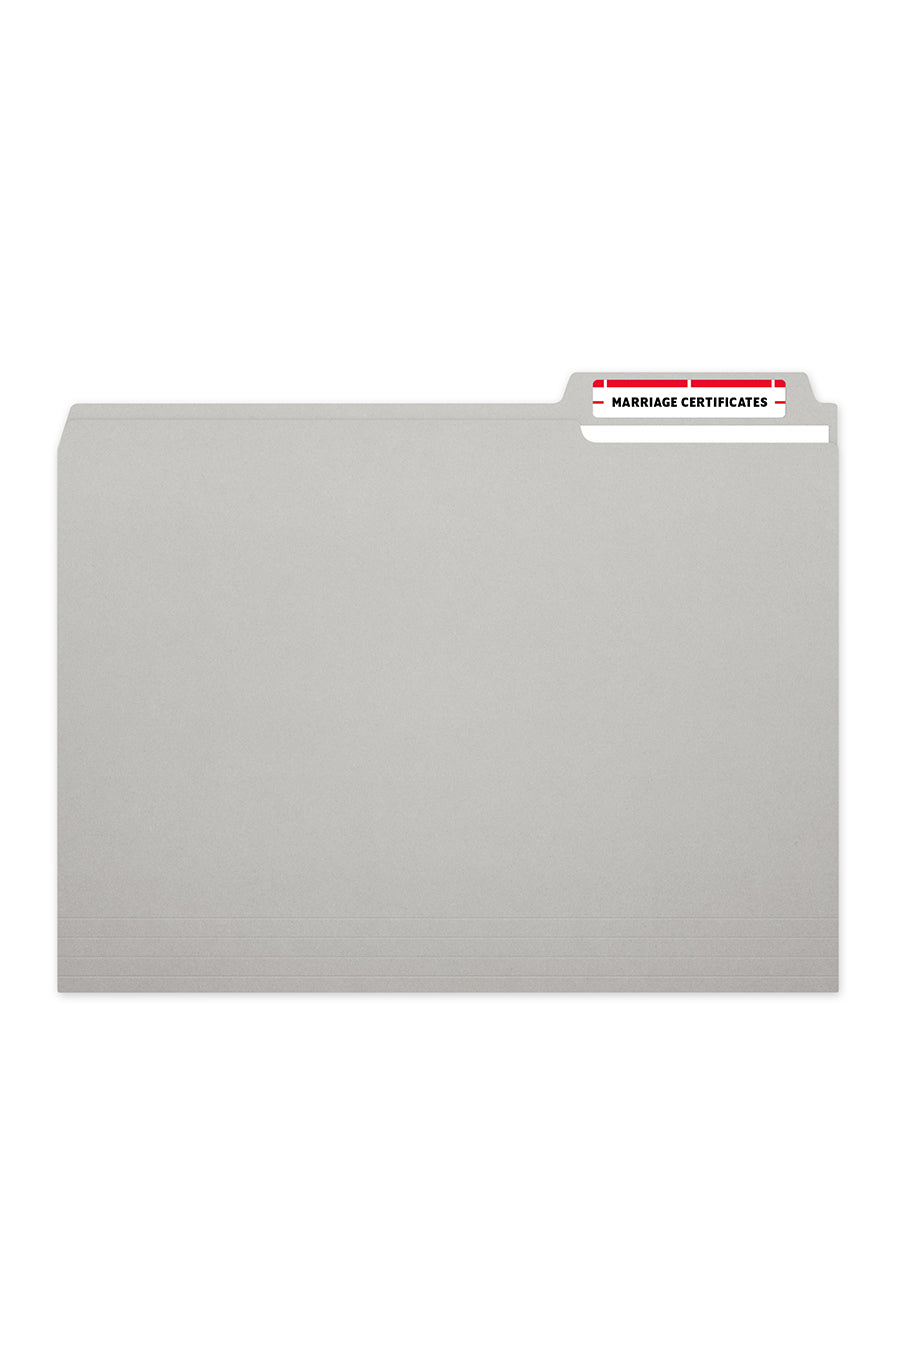 Laser/Ink Jet Red File Folder Labels, 2/3" x 3-7/16", 30/Sheet, 1500 Labels/Bx